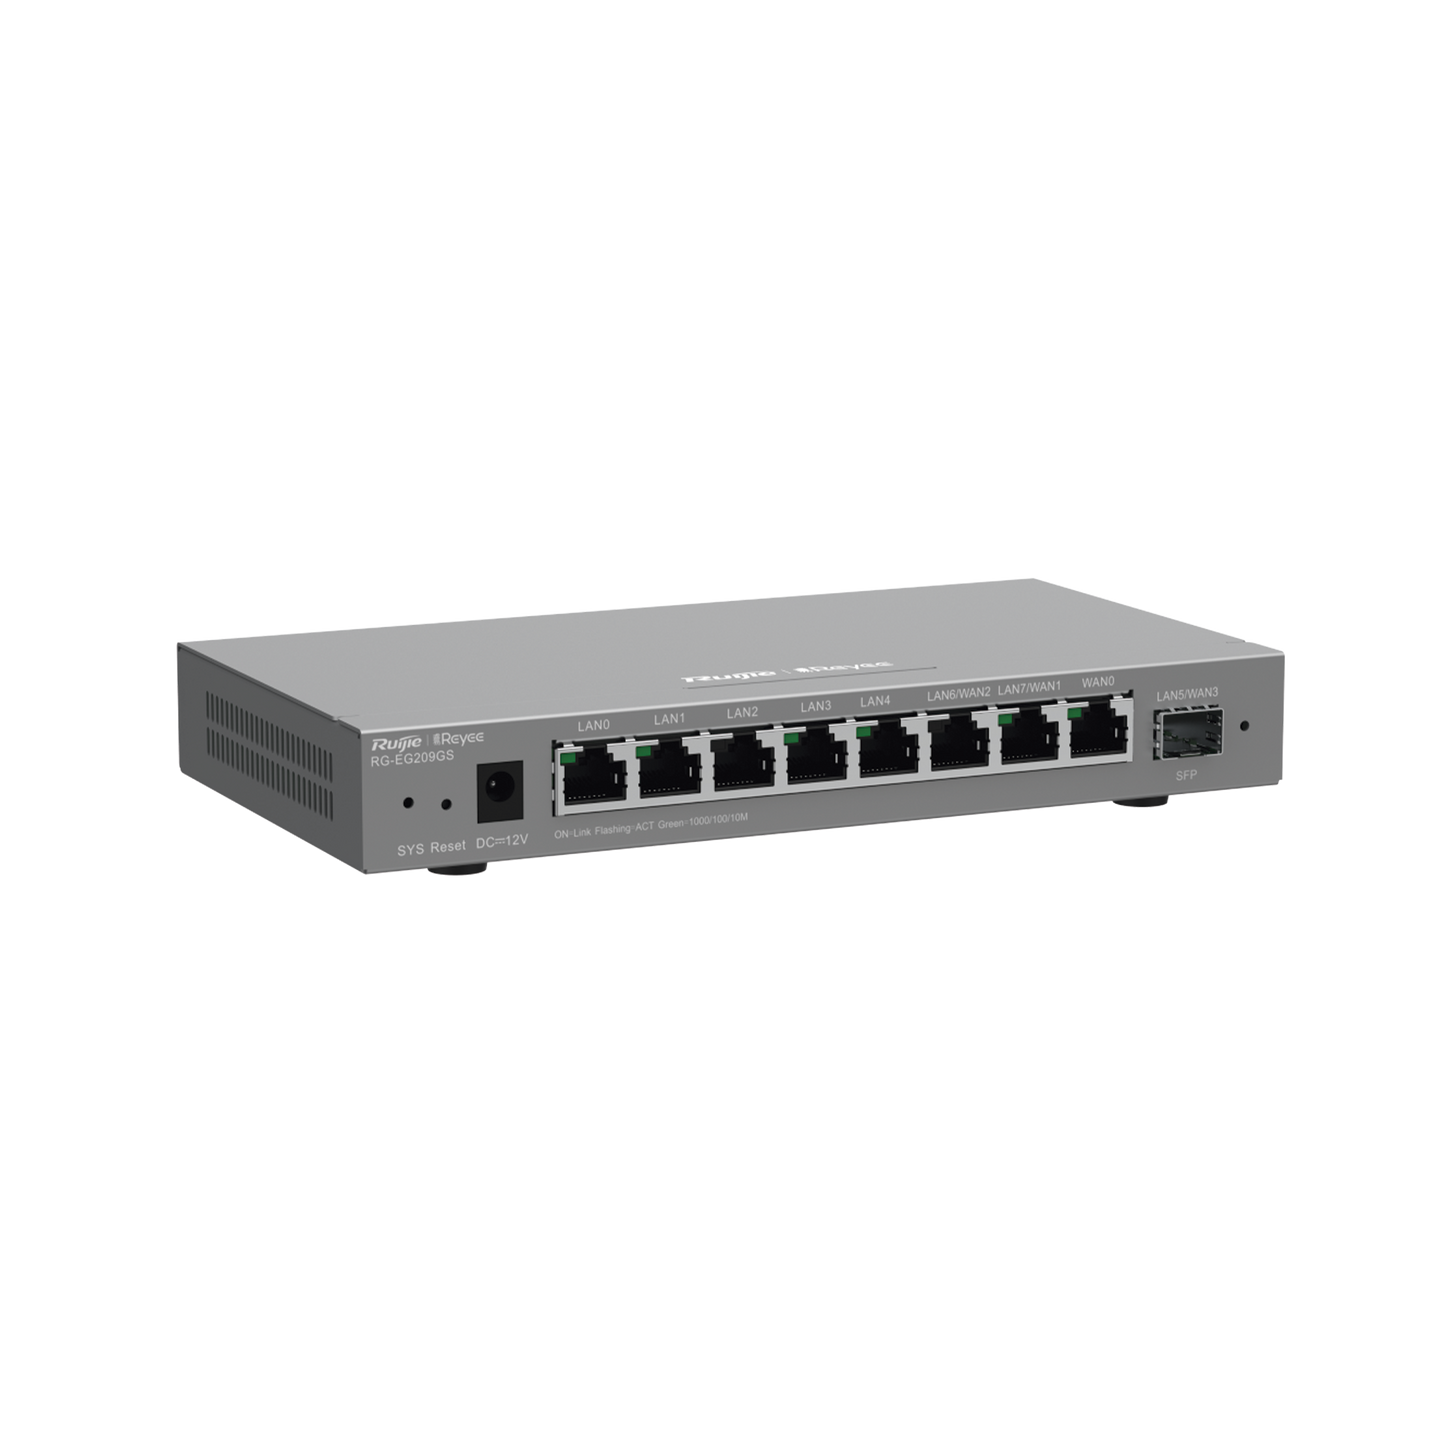 Router Balanceador Cloud, 8 puertos gigabit y 1 puerto SFP, soporta 4x WAN configurables, hasta 200 clientes.